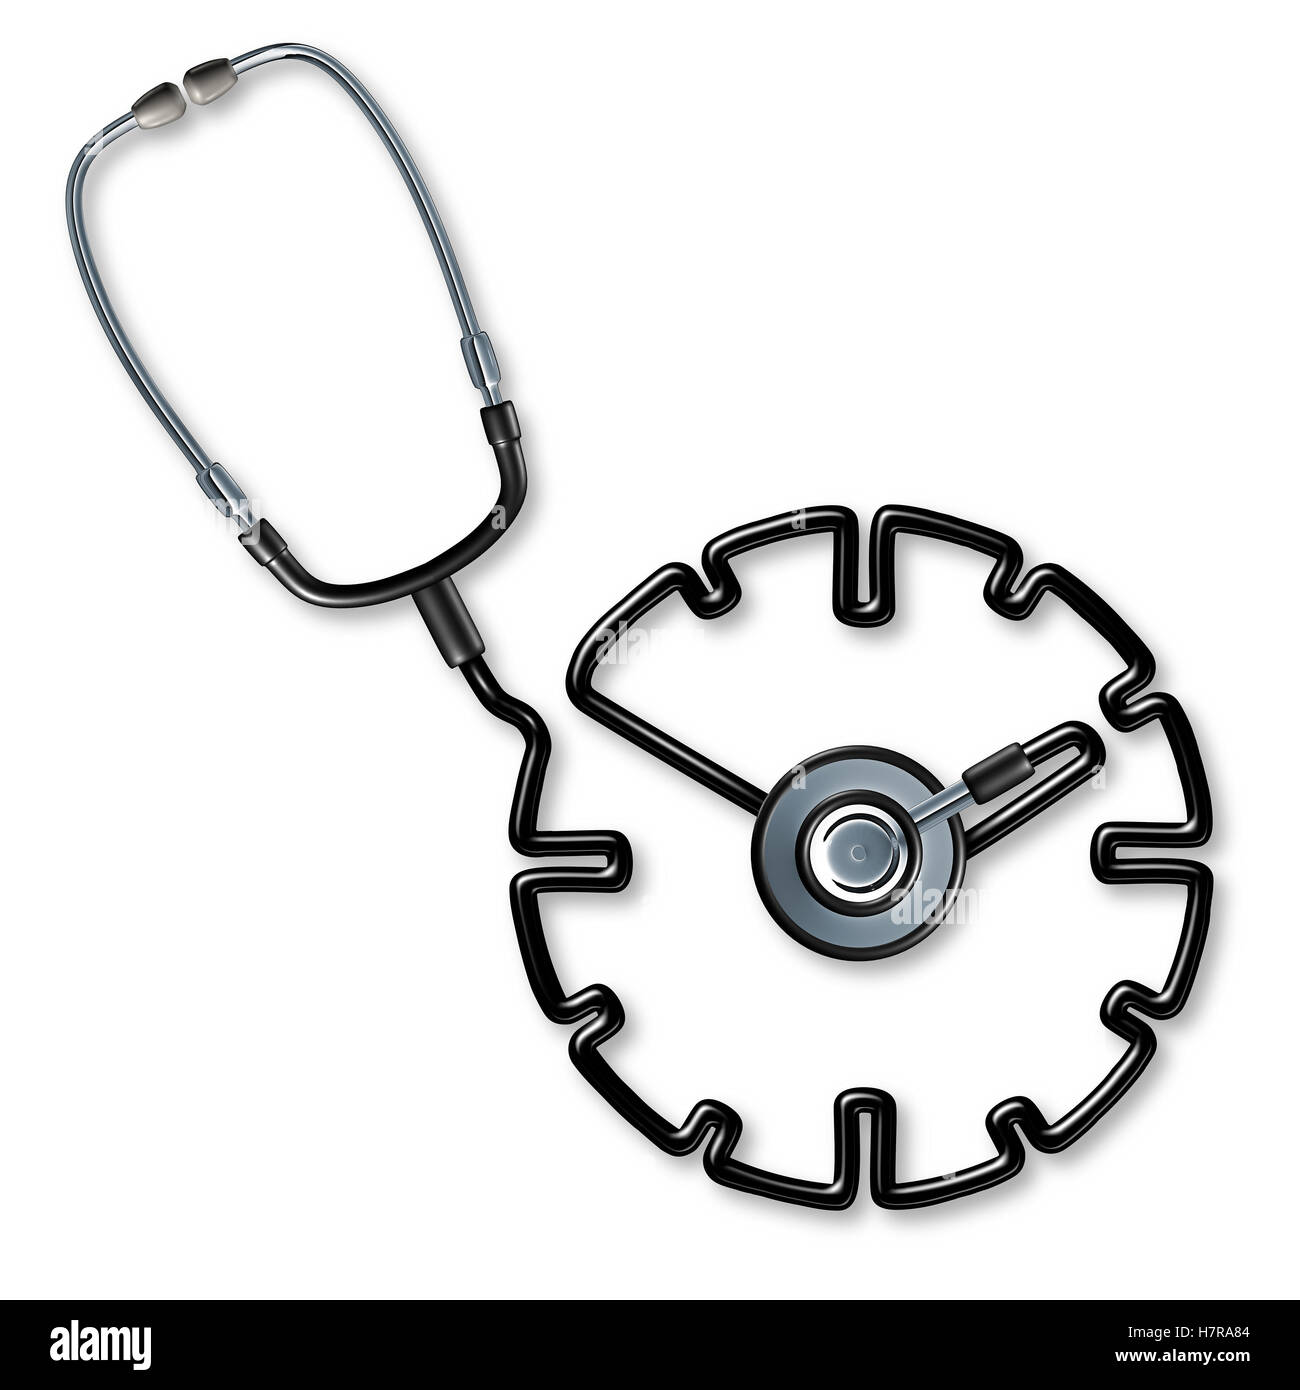 Ärztliche Untersuchung Termin als ein Arzt Stethoskop geformt wie eine Uhr oder beobachten Sie, wie ein Symbol für einen Termin und Patient Behandlung oder Operation Zeitplan Krankenhausmanagement als 3D Illustration Konzept. Stockfoto